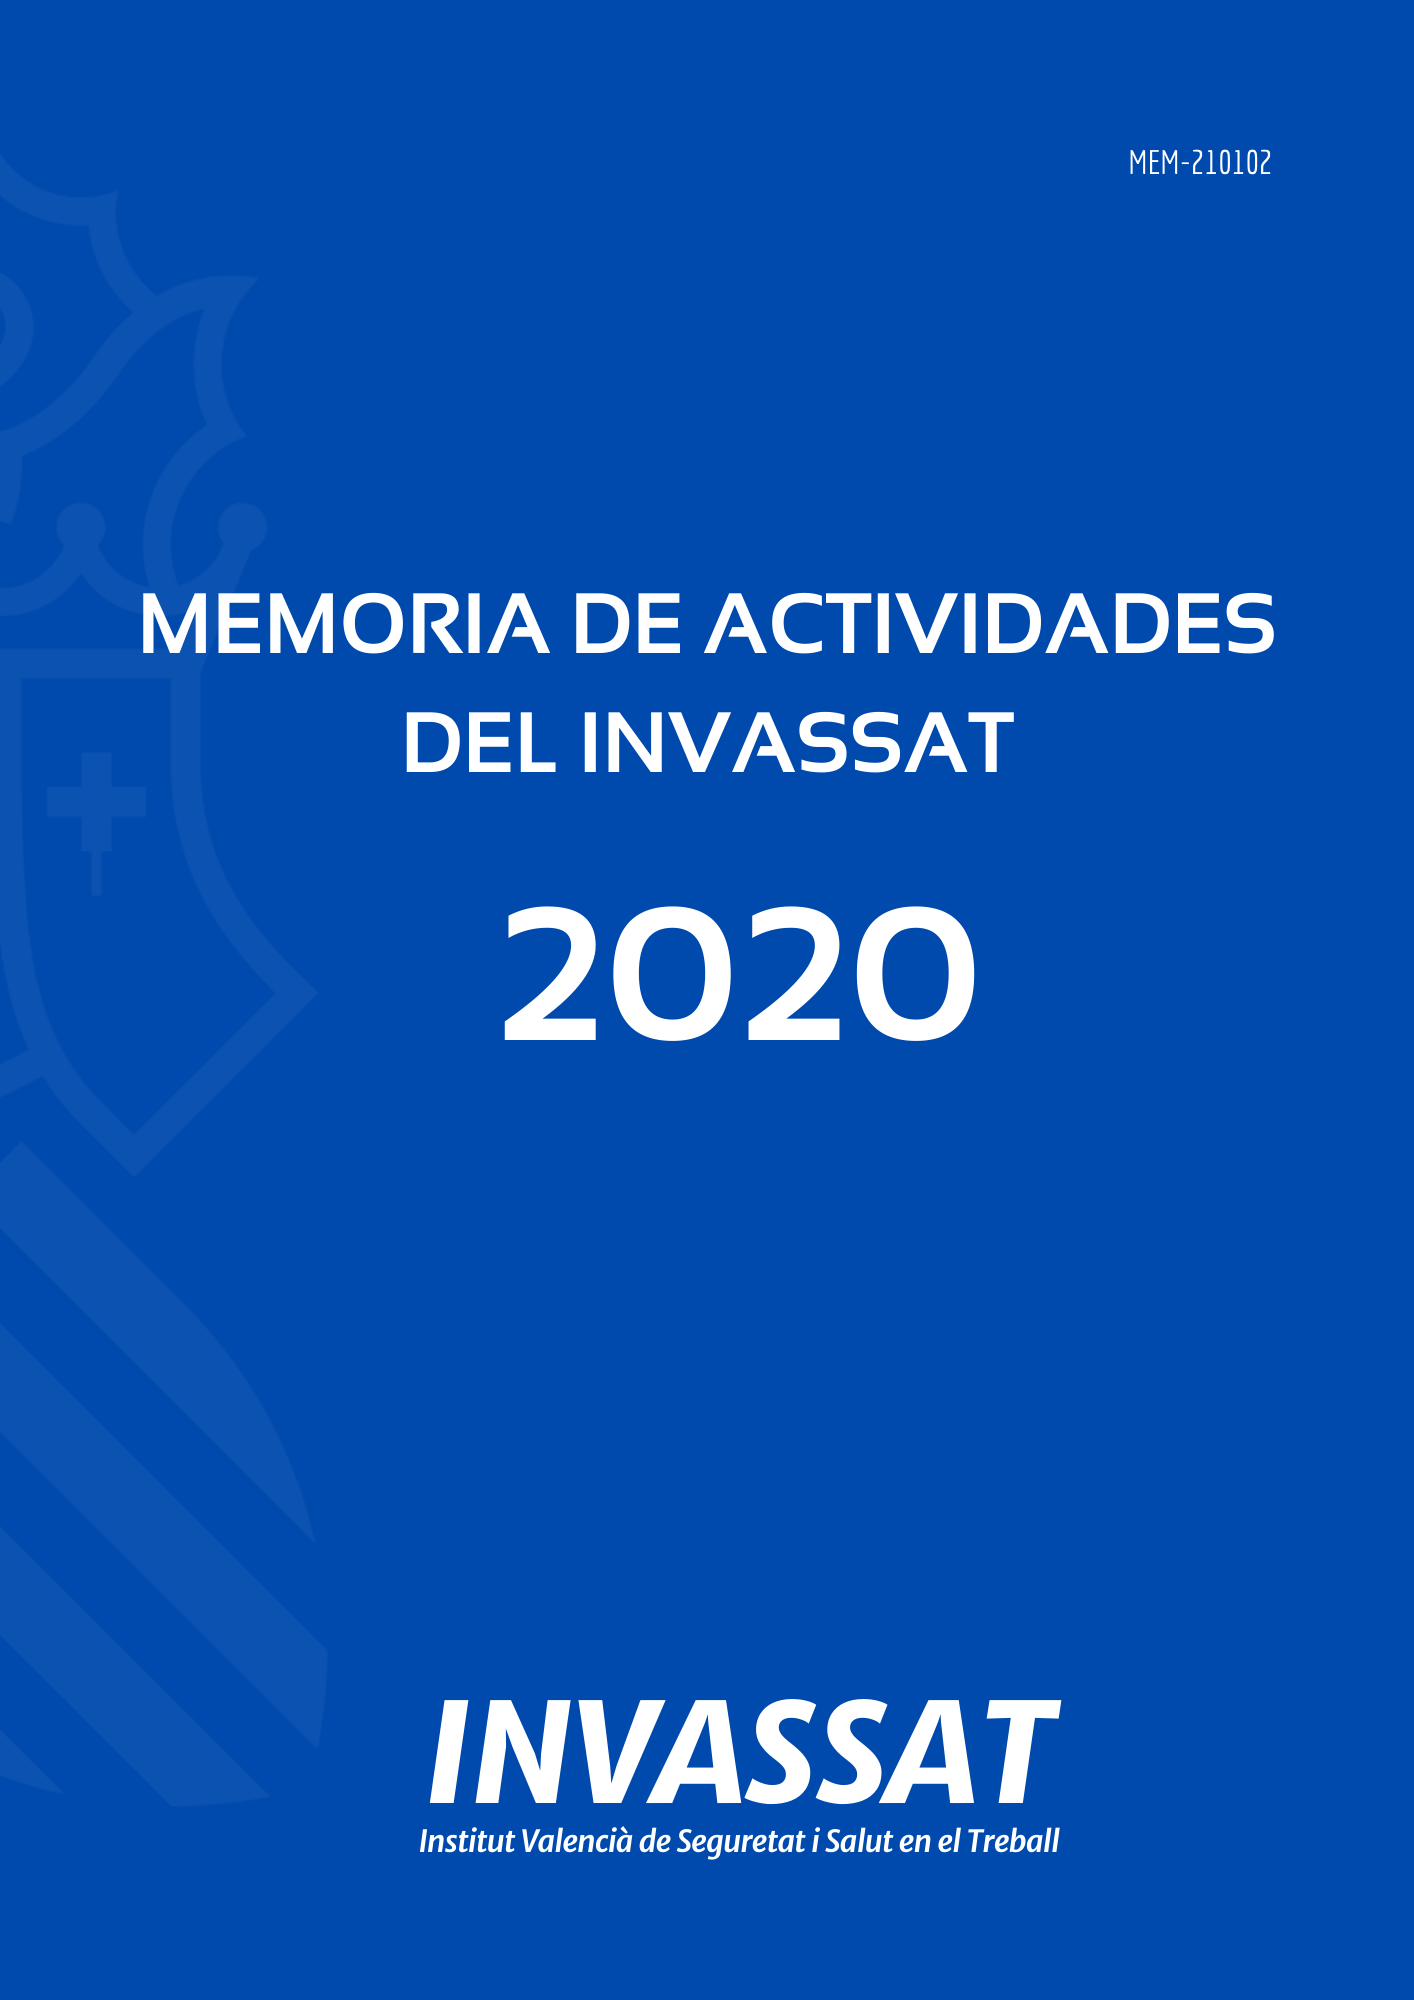 Memoria de actividades del INVASSAT correspondiente al ejercicio 2020.